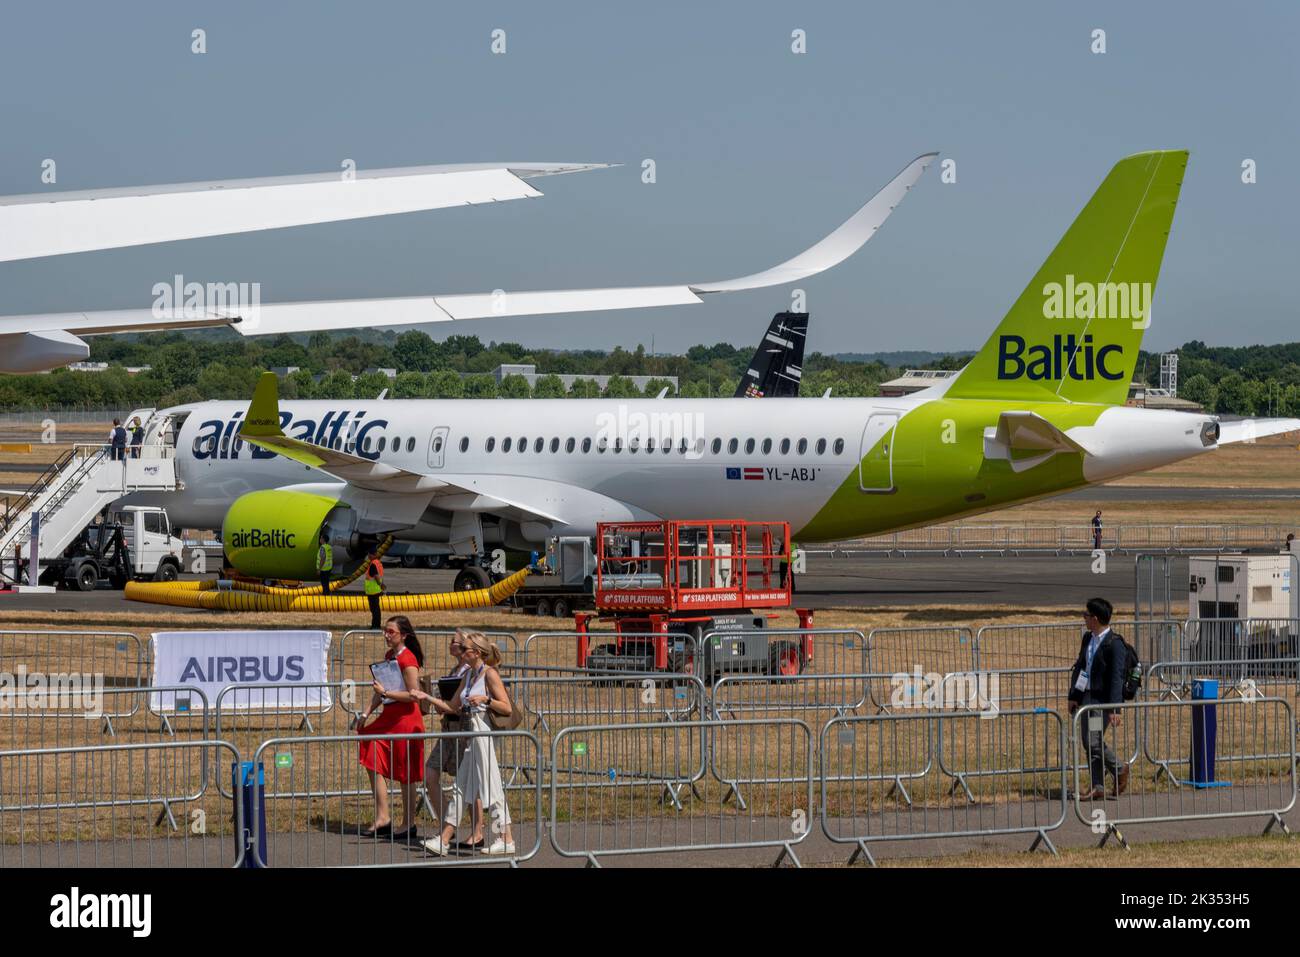 Farnborough International Airshow 2022. Feria aeroespacial, con avión de avión Airbus A220 -300 de avión de avión Baltic de aire en exposición para visitar. Mujeres visitantes Foto de stock